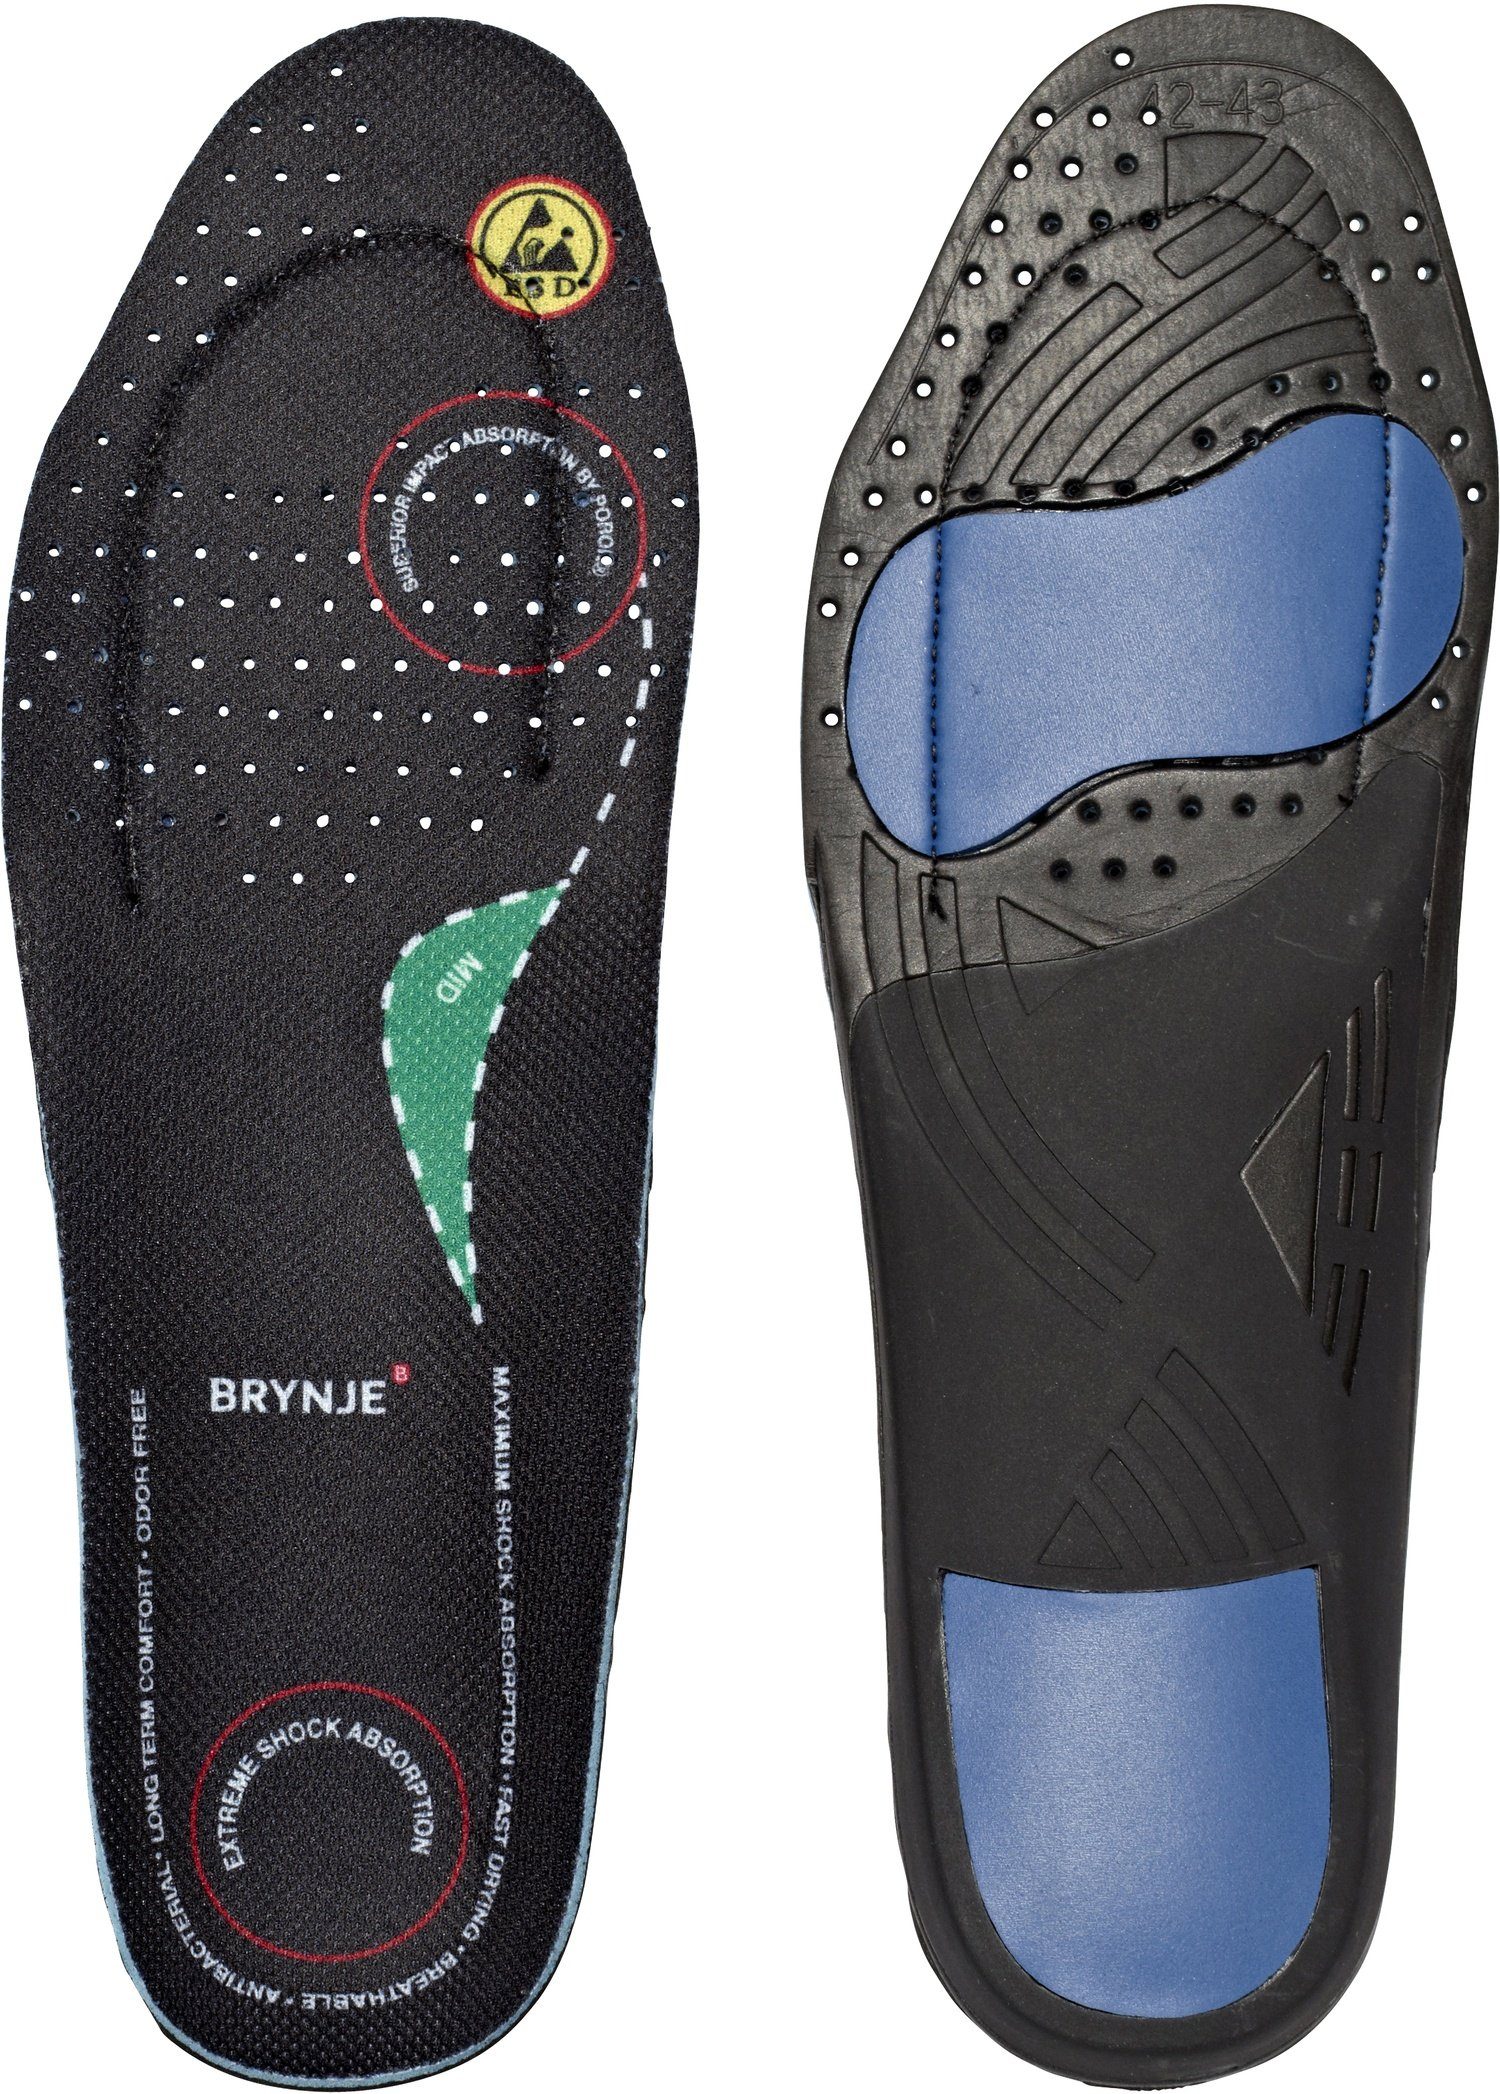 Brynje Ultimate FootFitedium Sicherheitsschuh für optimale Unterstützung und Komfort